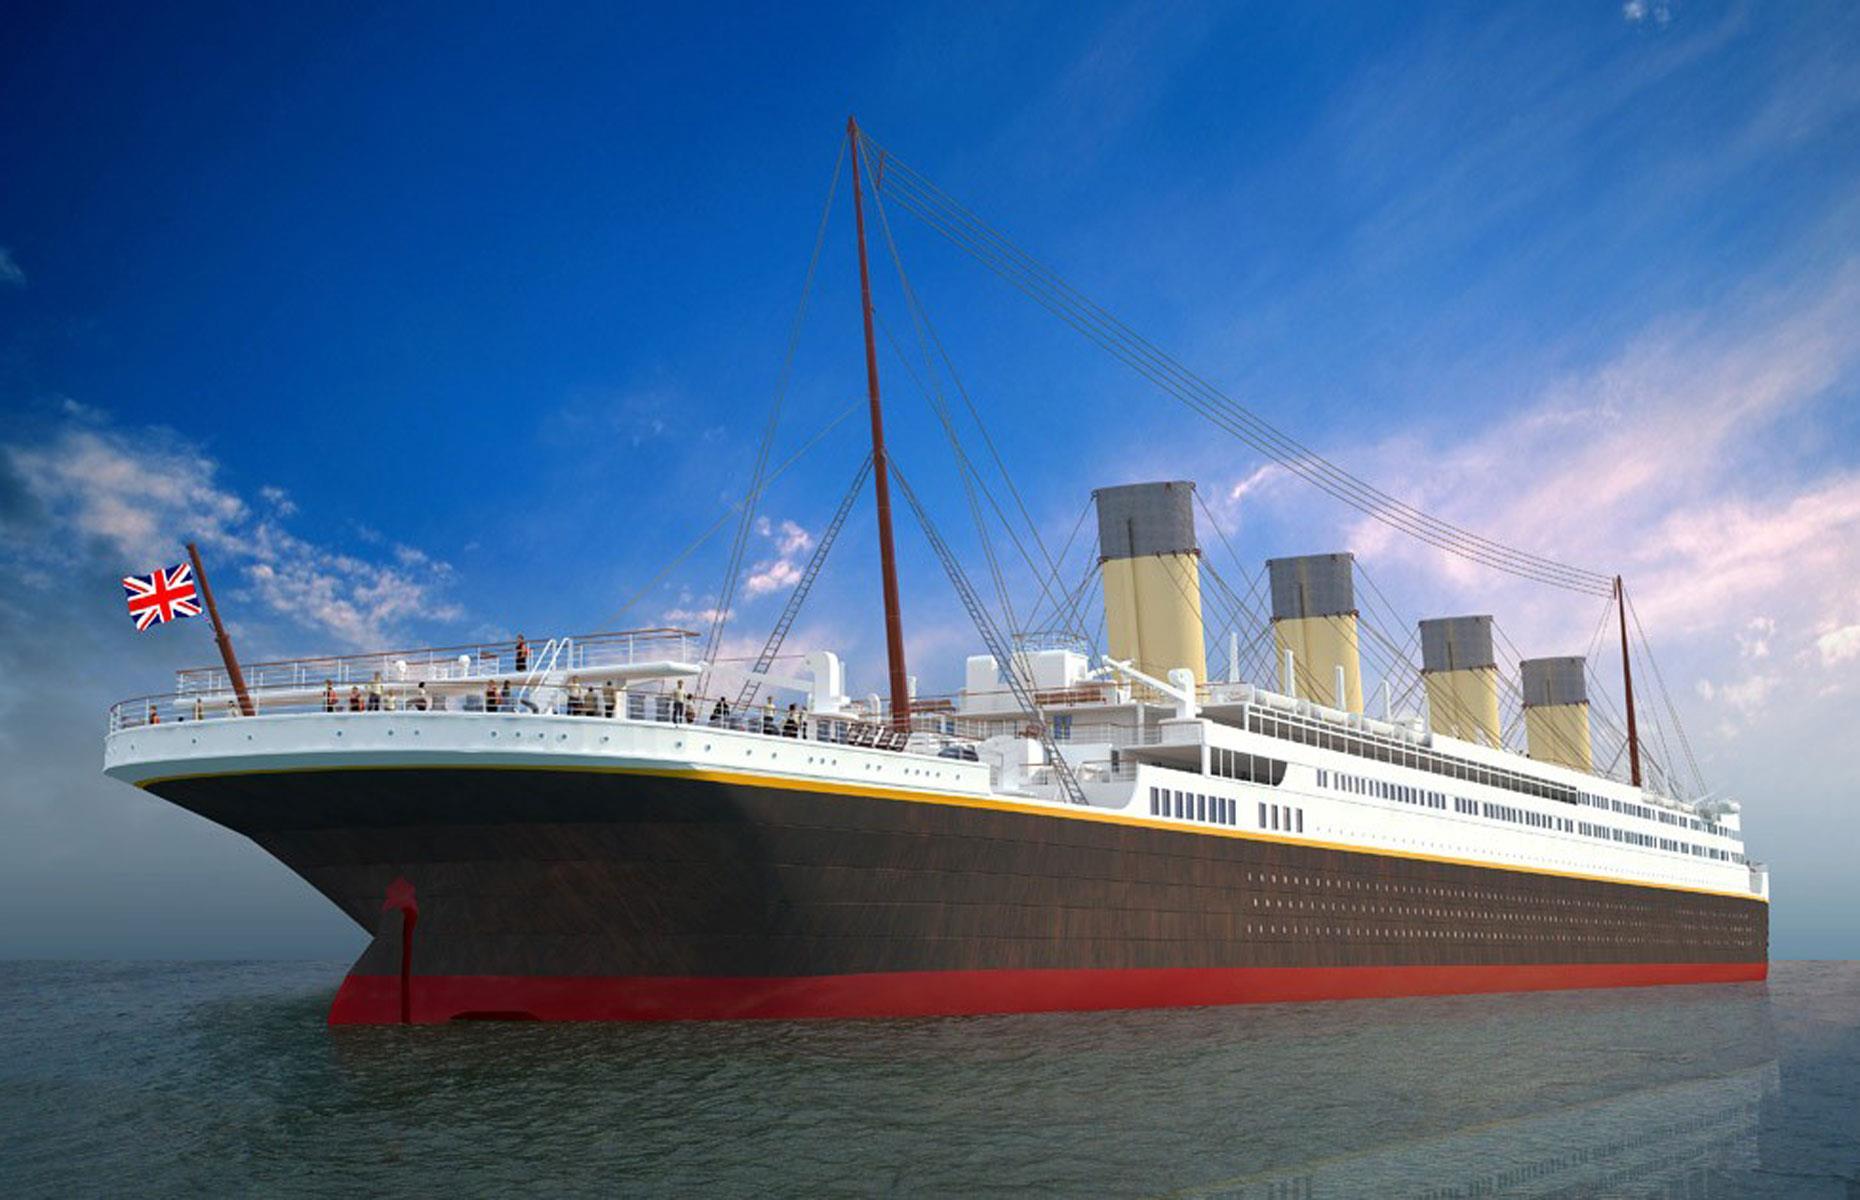 titanic tour photos